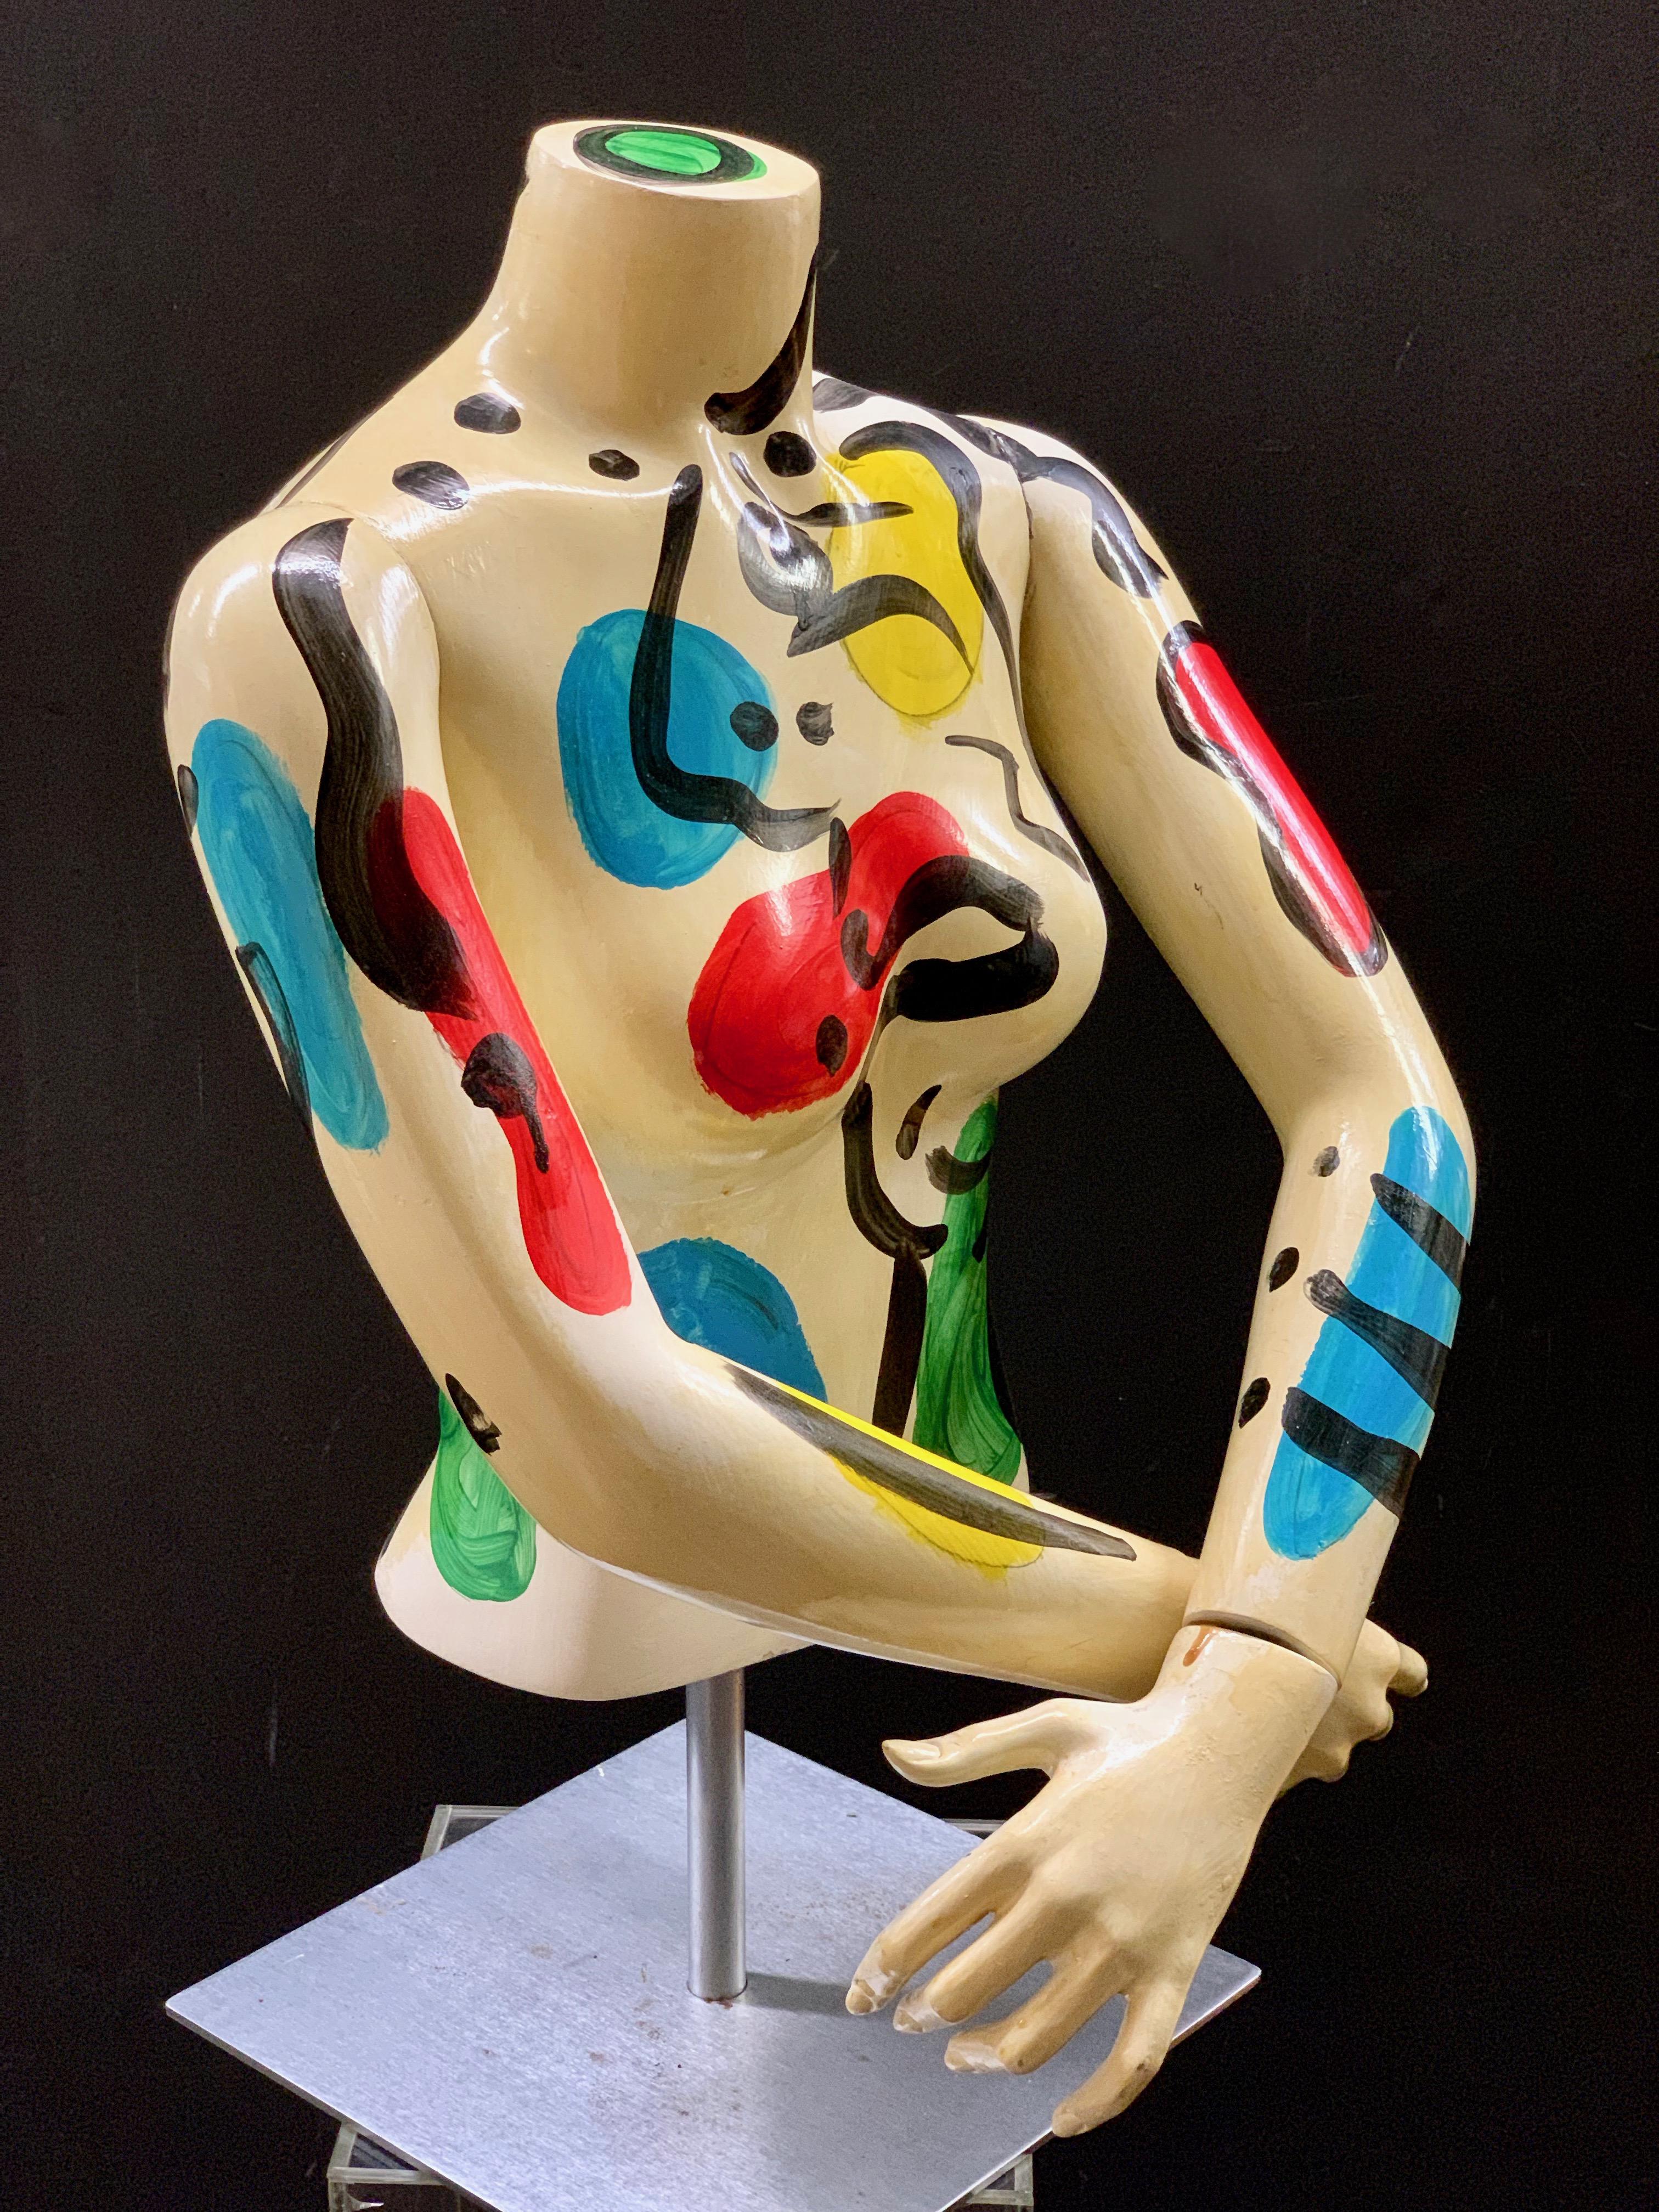 Torse de mannequin peint en expressionniste abstrait par Peter Keil, peint en couleurs vives avec des visages abstraits. La pièce est signée sur la hanche du côté gauche, a probablement été fabriquée dans les années 1980 et est en excellent état